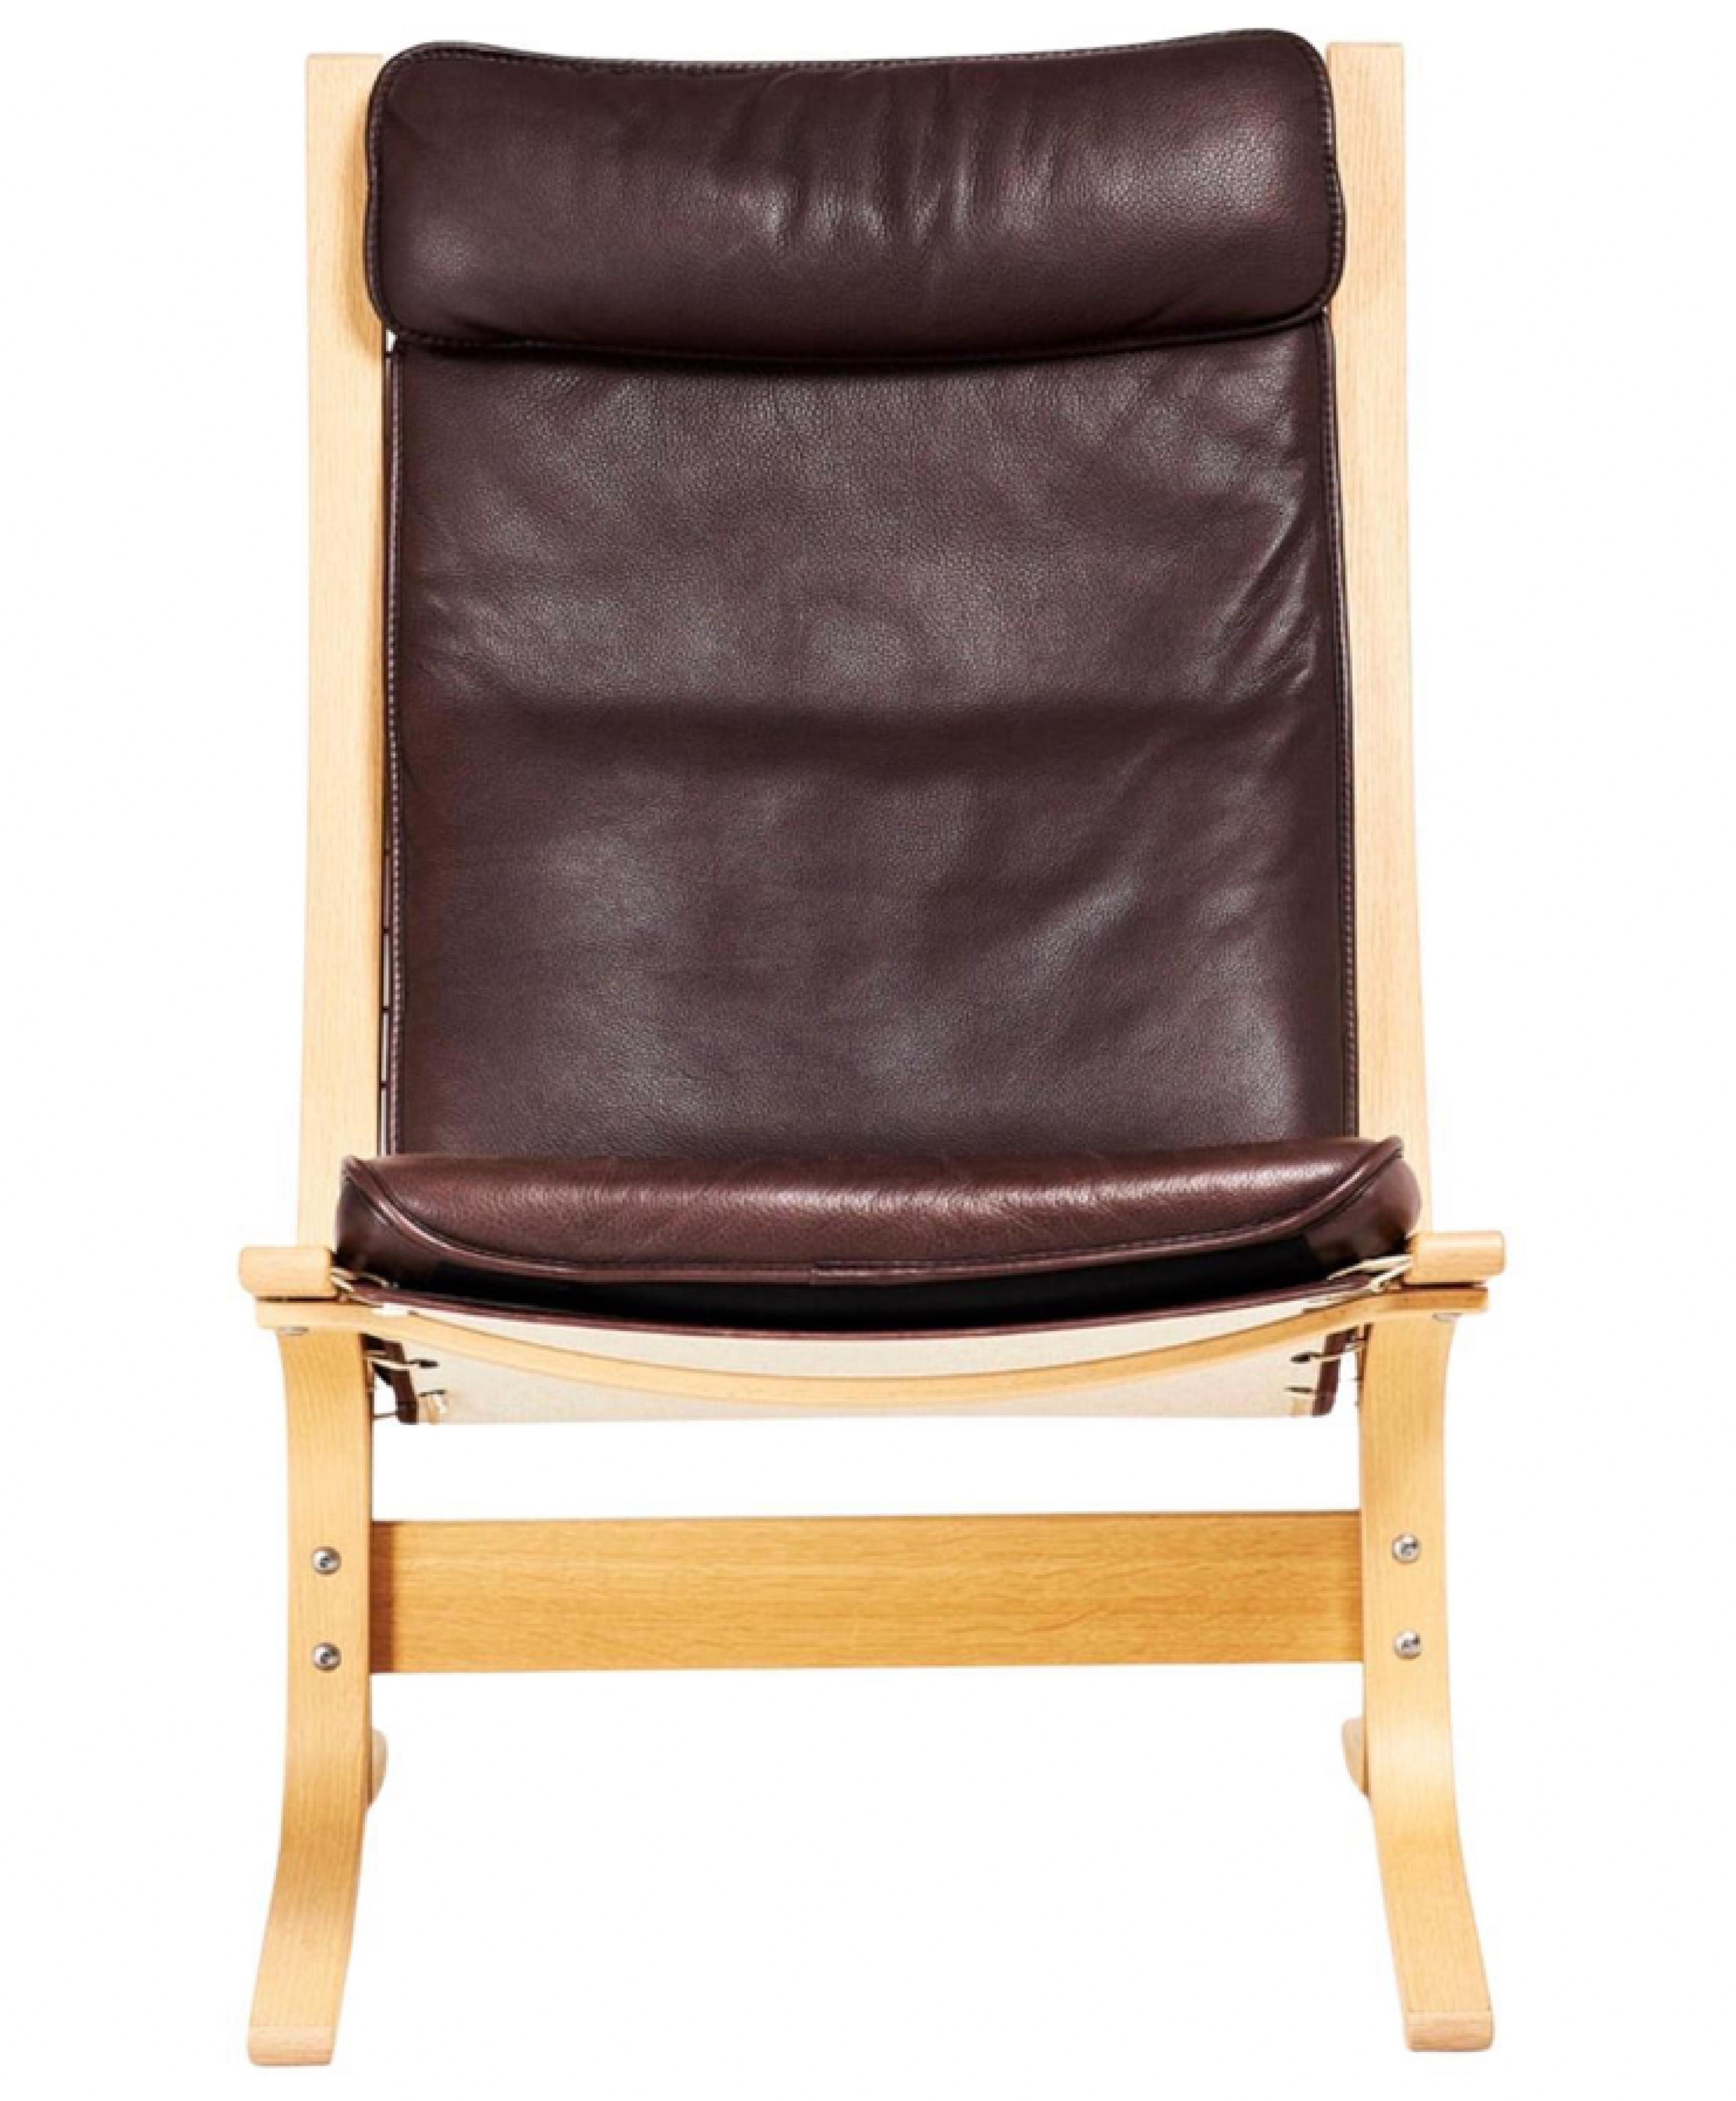 La rare et unique édition FLORA des chaises longues classiques SIESTA a été fabriquée en 2005 pour célébrer le 40e anniversaire de la chaise de sieste originale d'Ingmar Rellings.

Tout en conservant le design minimaliste et élégant, l'édition FLORA